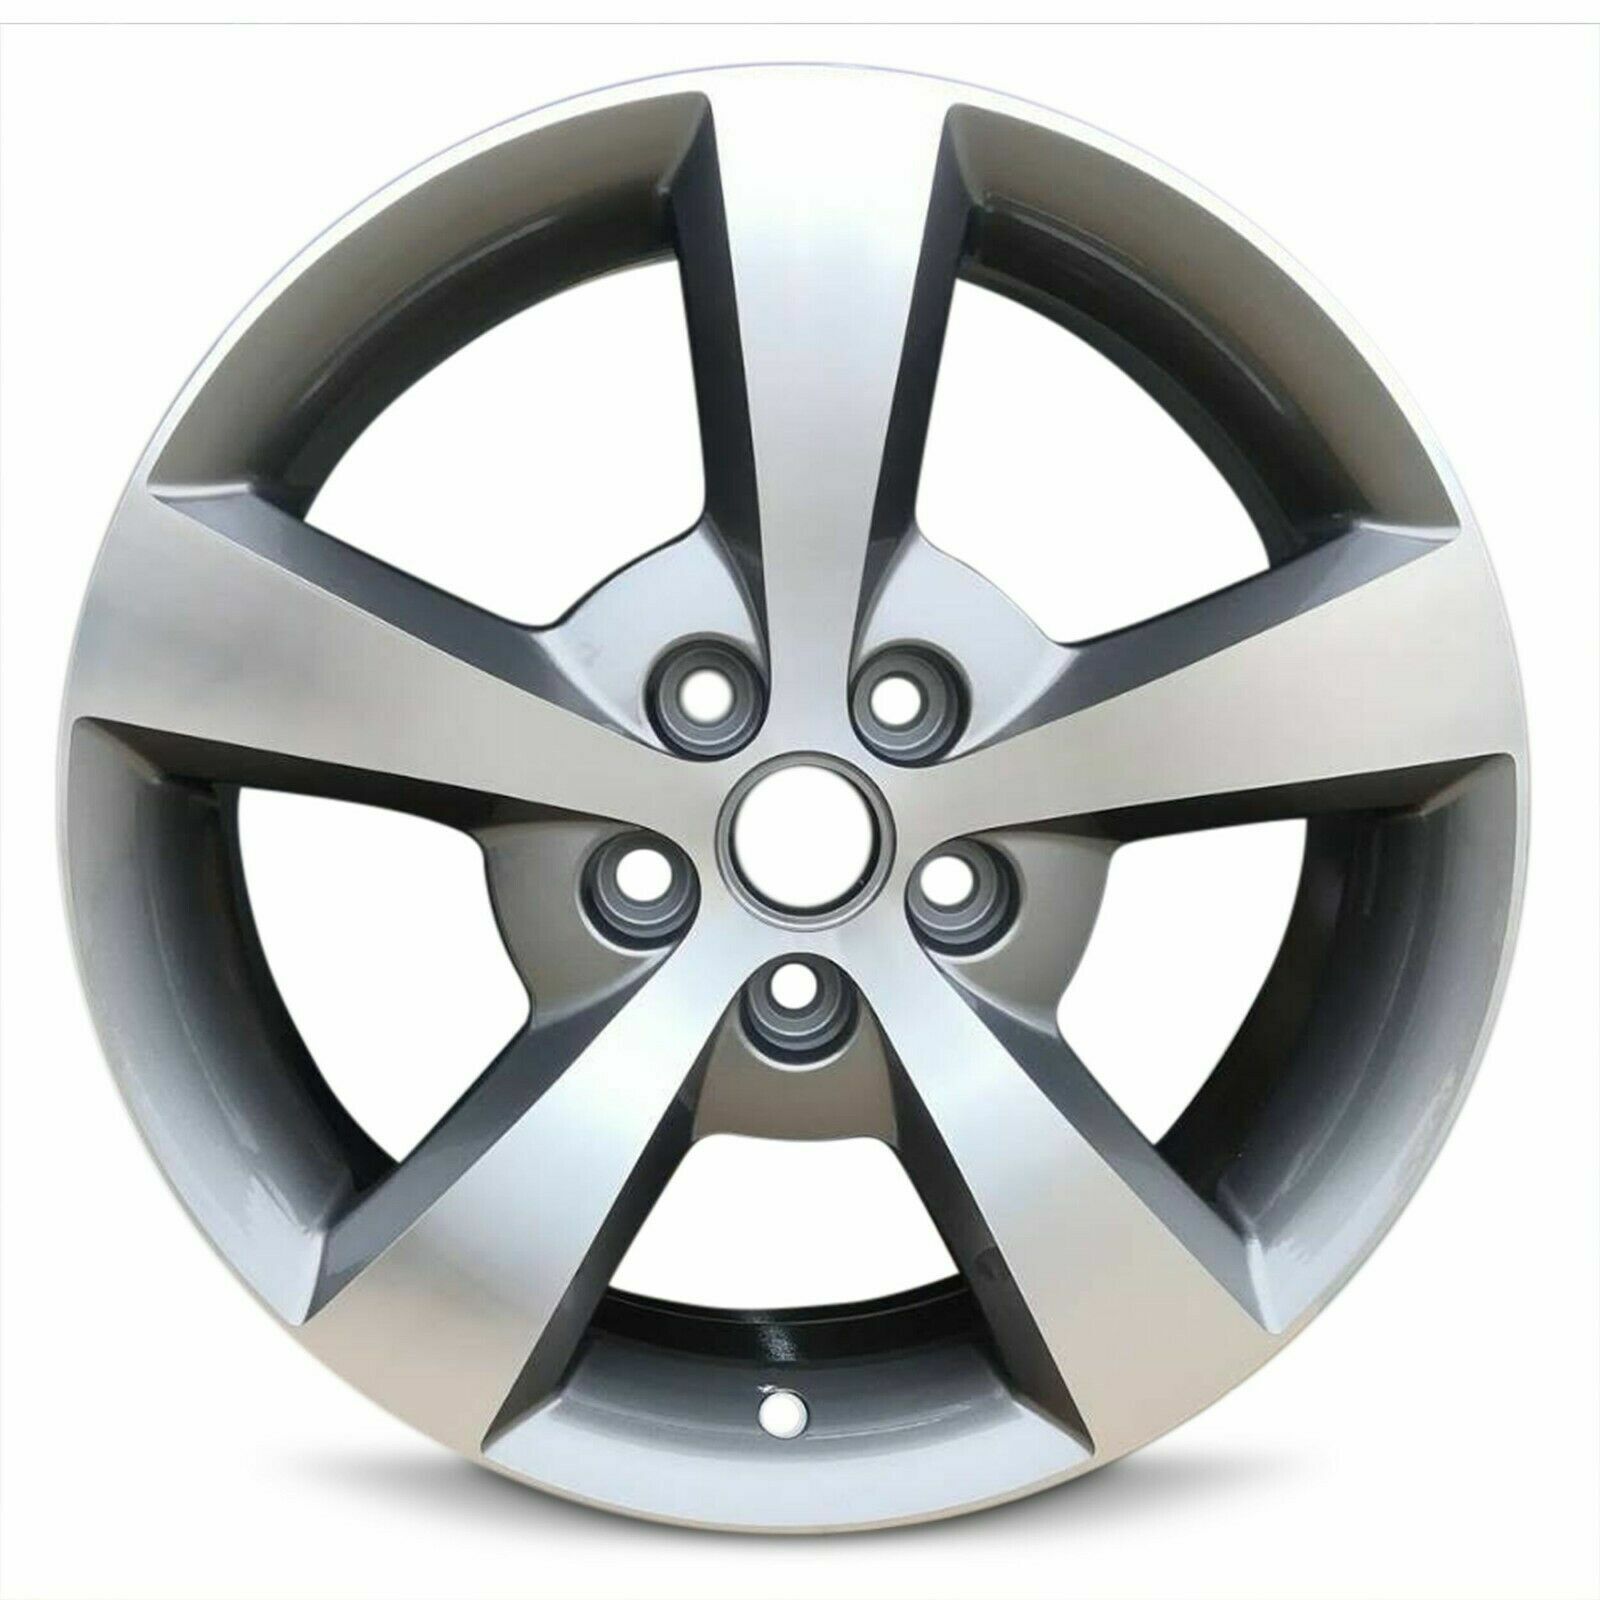 Wheel for 2006-2012 Chevy Malibu 17x7 Inch New Aluminum Rim 5 Lug 110mm Silver